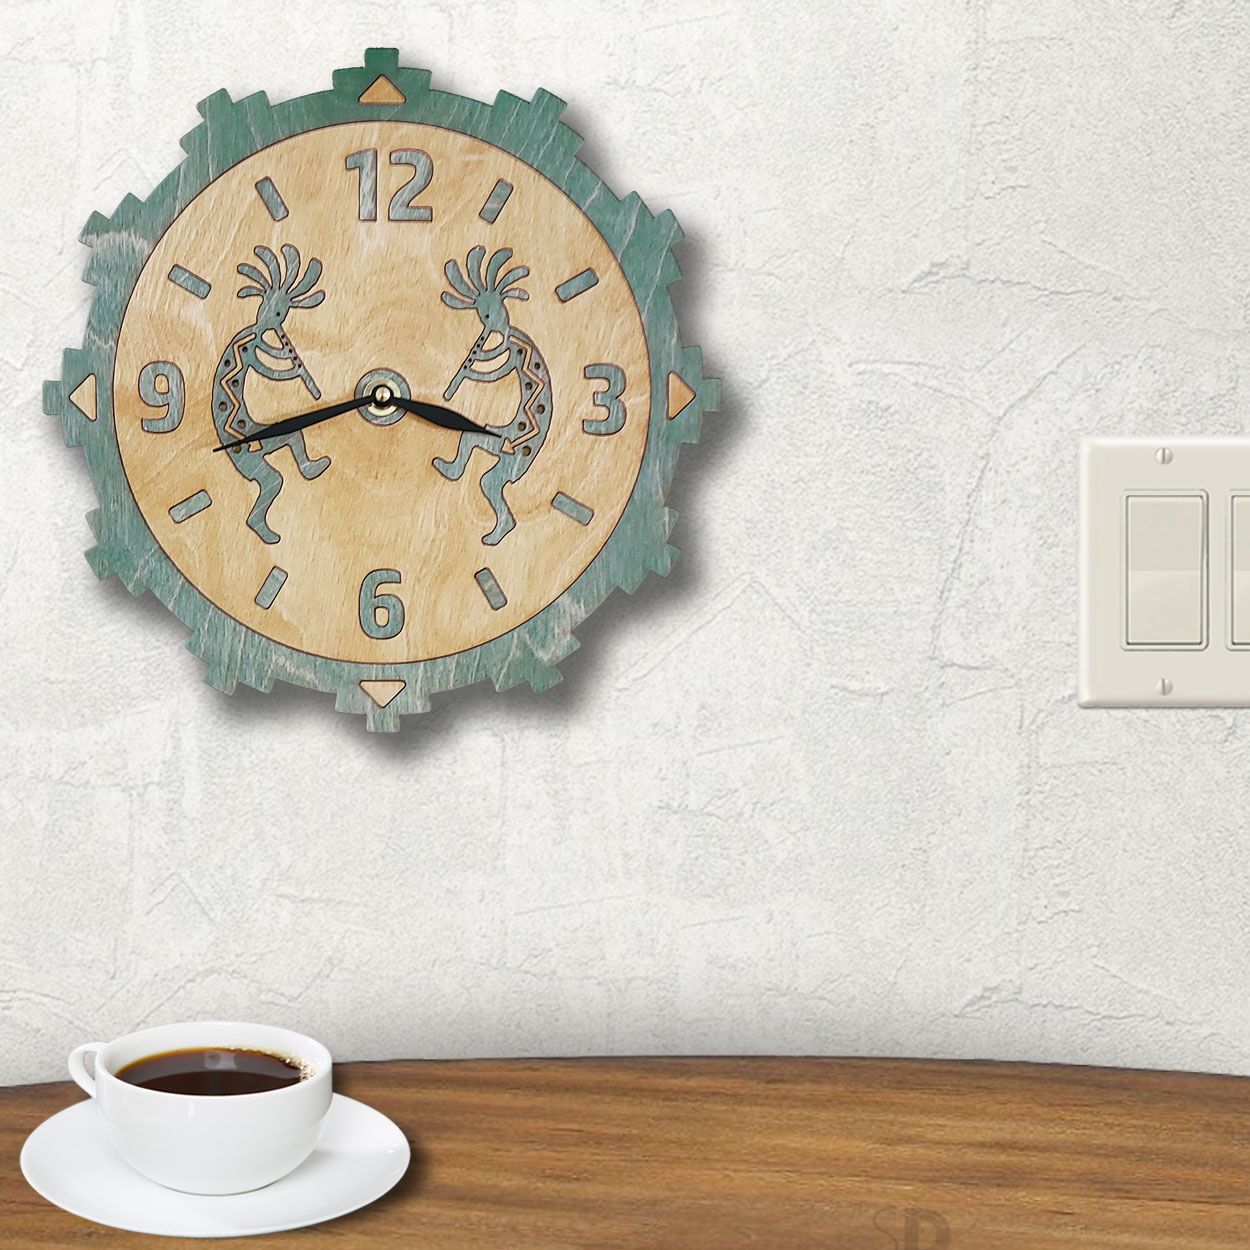 165740 - Kokopellis Sonoran Green Wood Inlay Clock